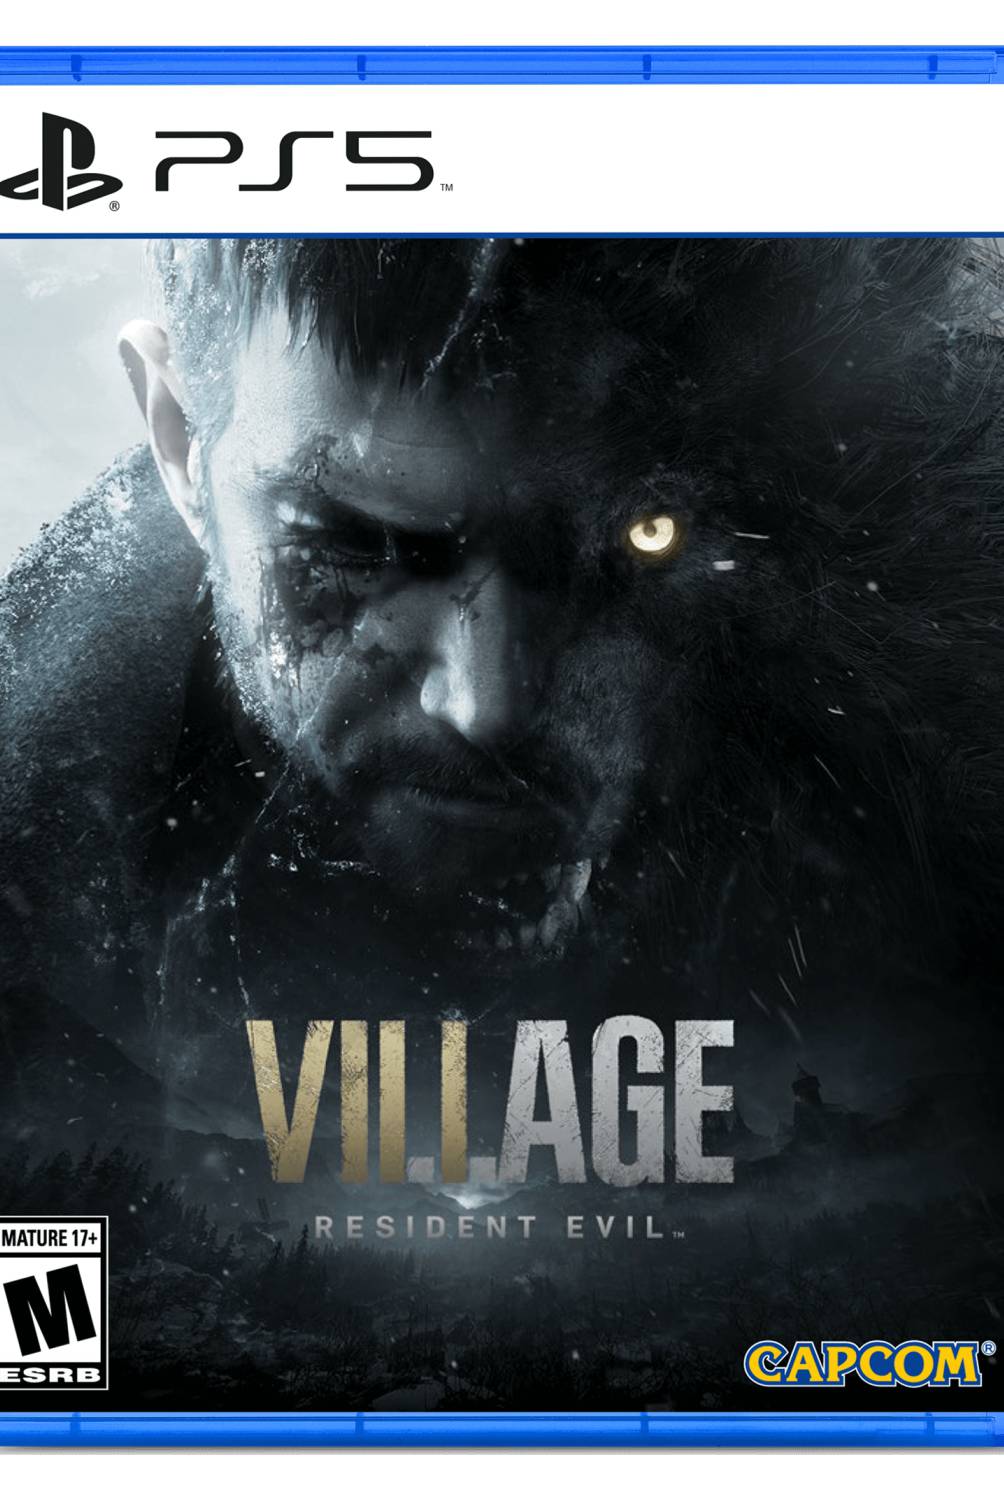 PLAYSTATION - Videojuego Residen Evil Village Video Juego Consola Playstation 5 PS5 Idioma Español Capcom